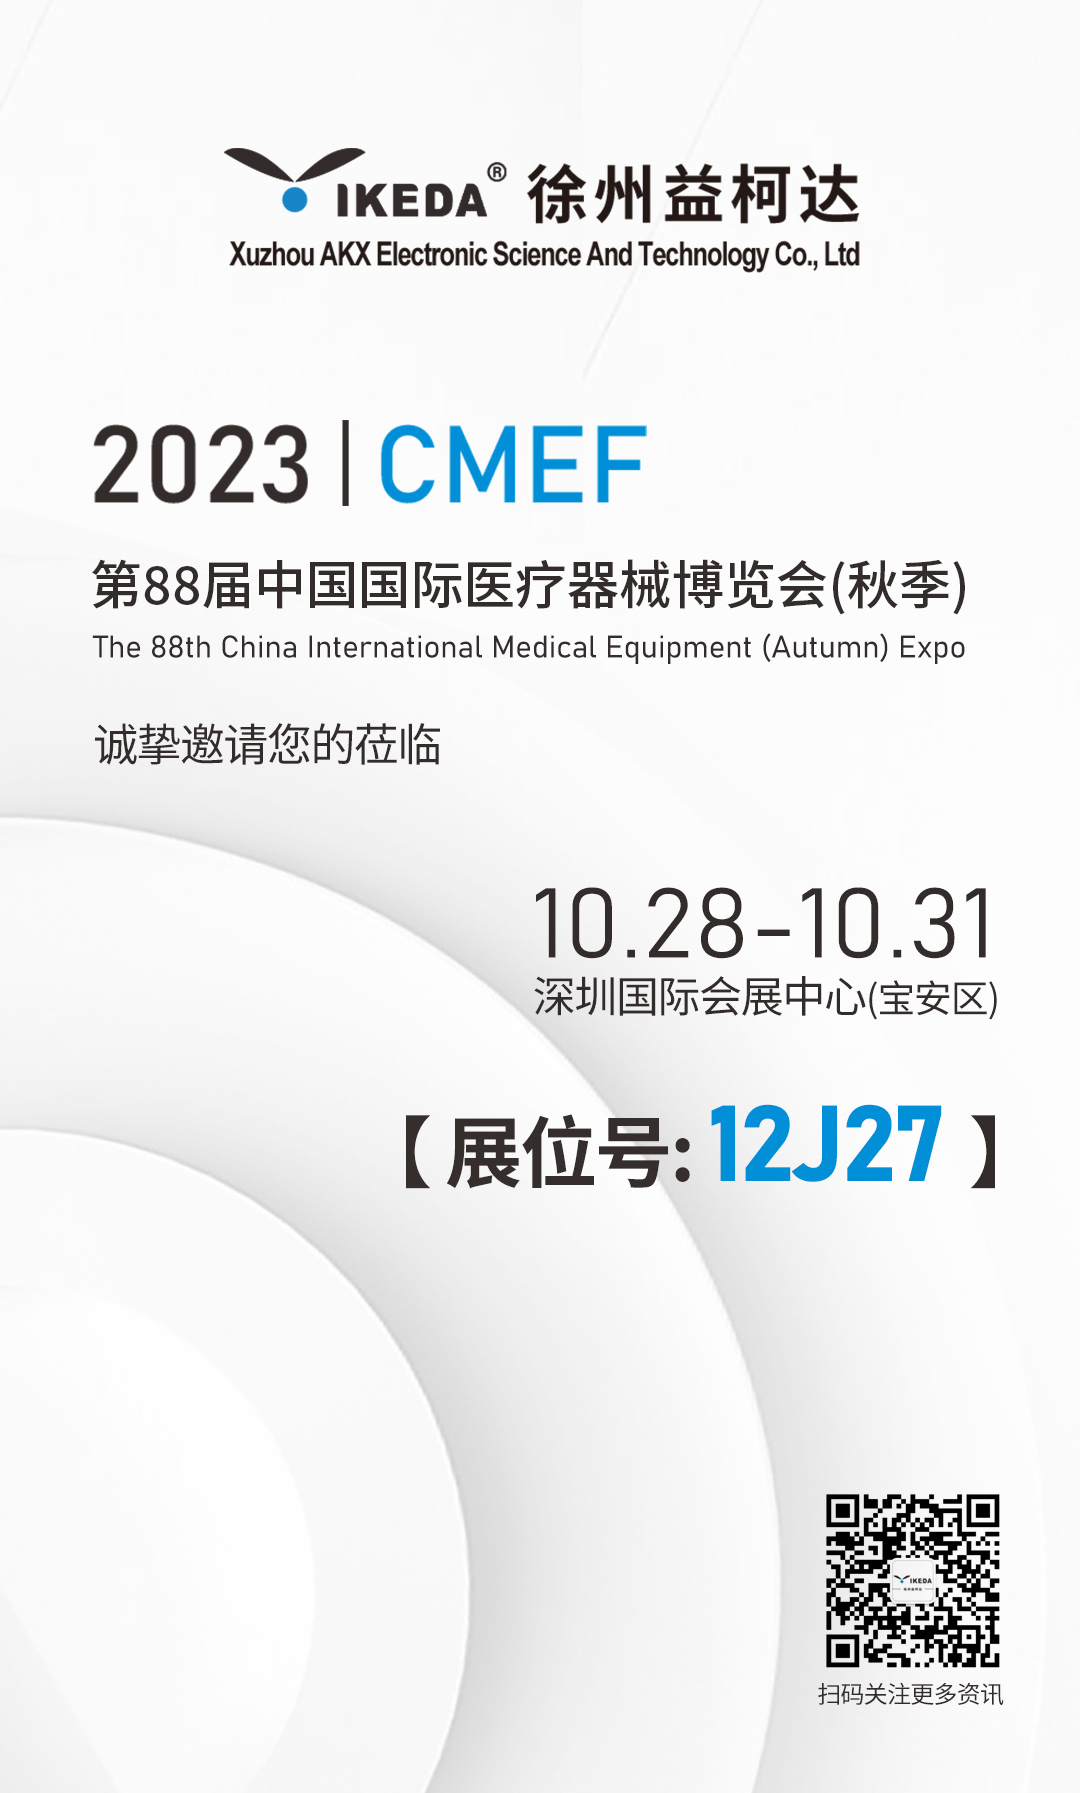 益柯达与您相约第88届中国国际医疗器械博览会(秋季)